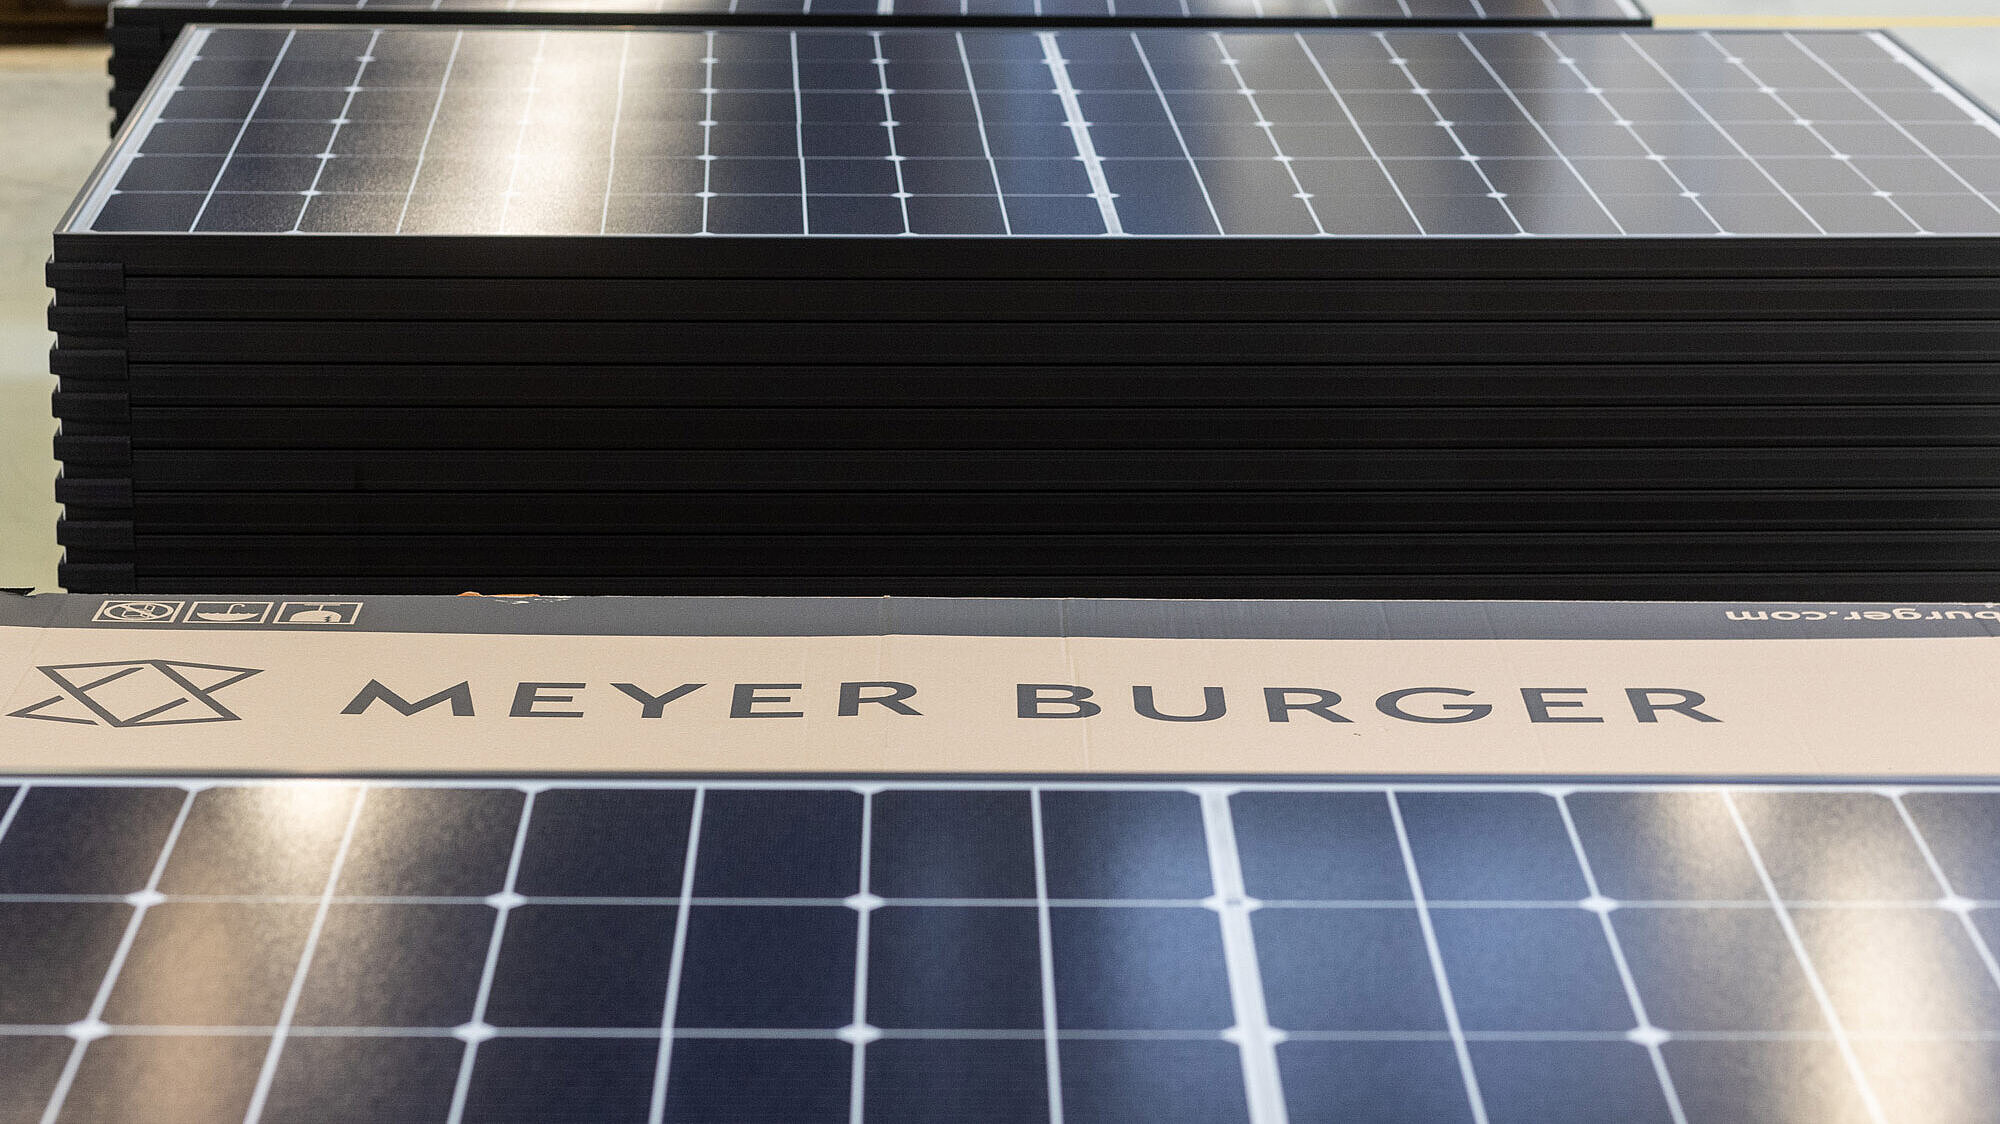 Meyer Burger Solar module